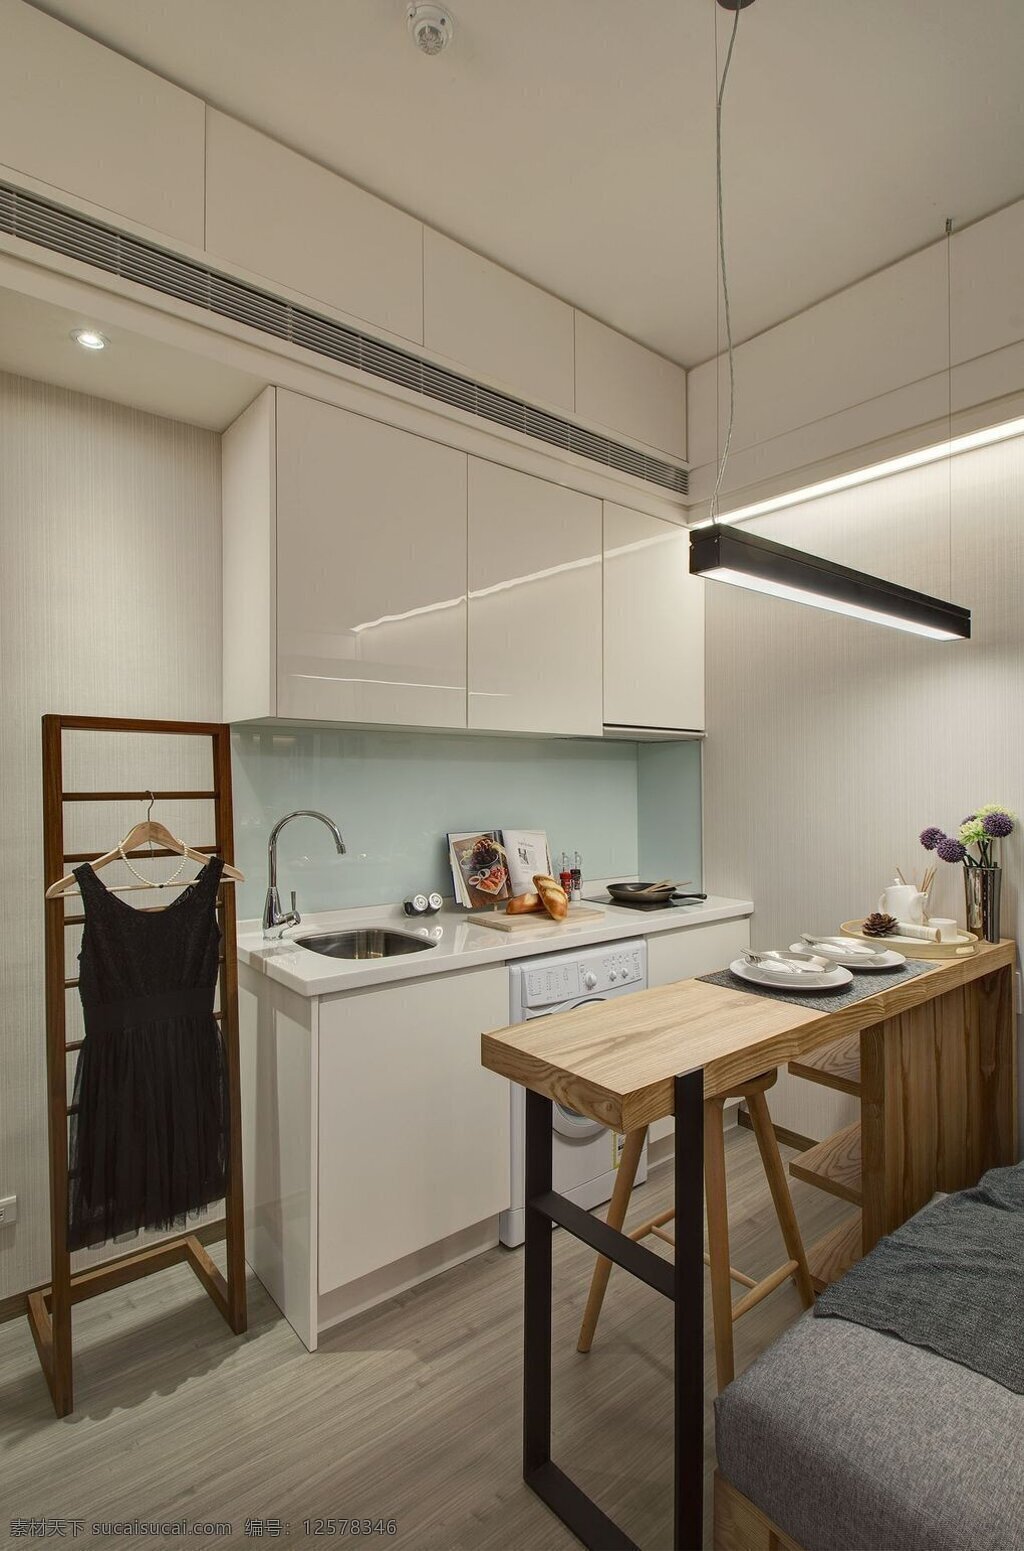 清新 简约 风 室内设计 厨房 吧台 效果图 现代 料理台 白色 调 壁柜 吊柜 家装